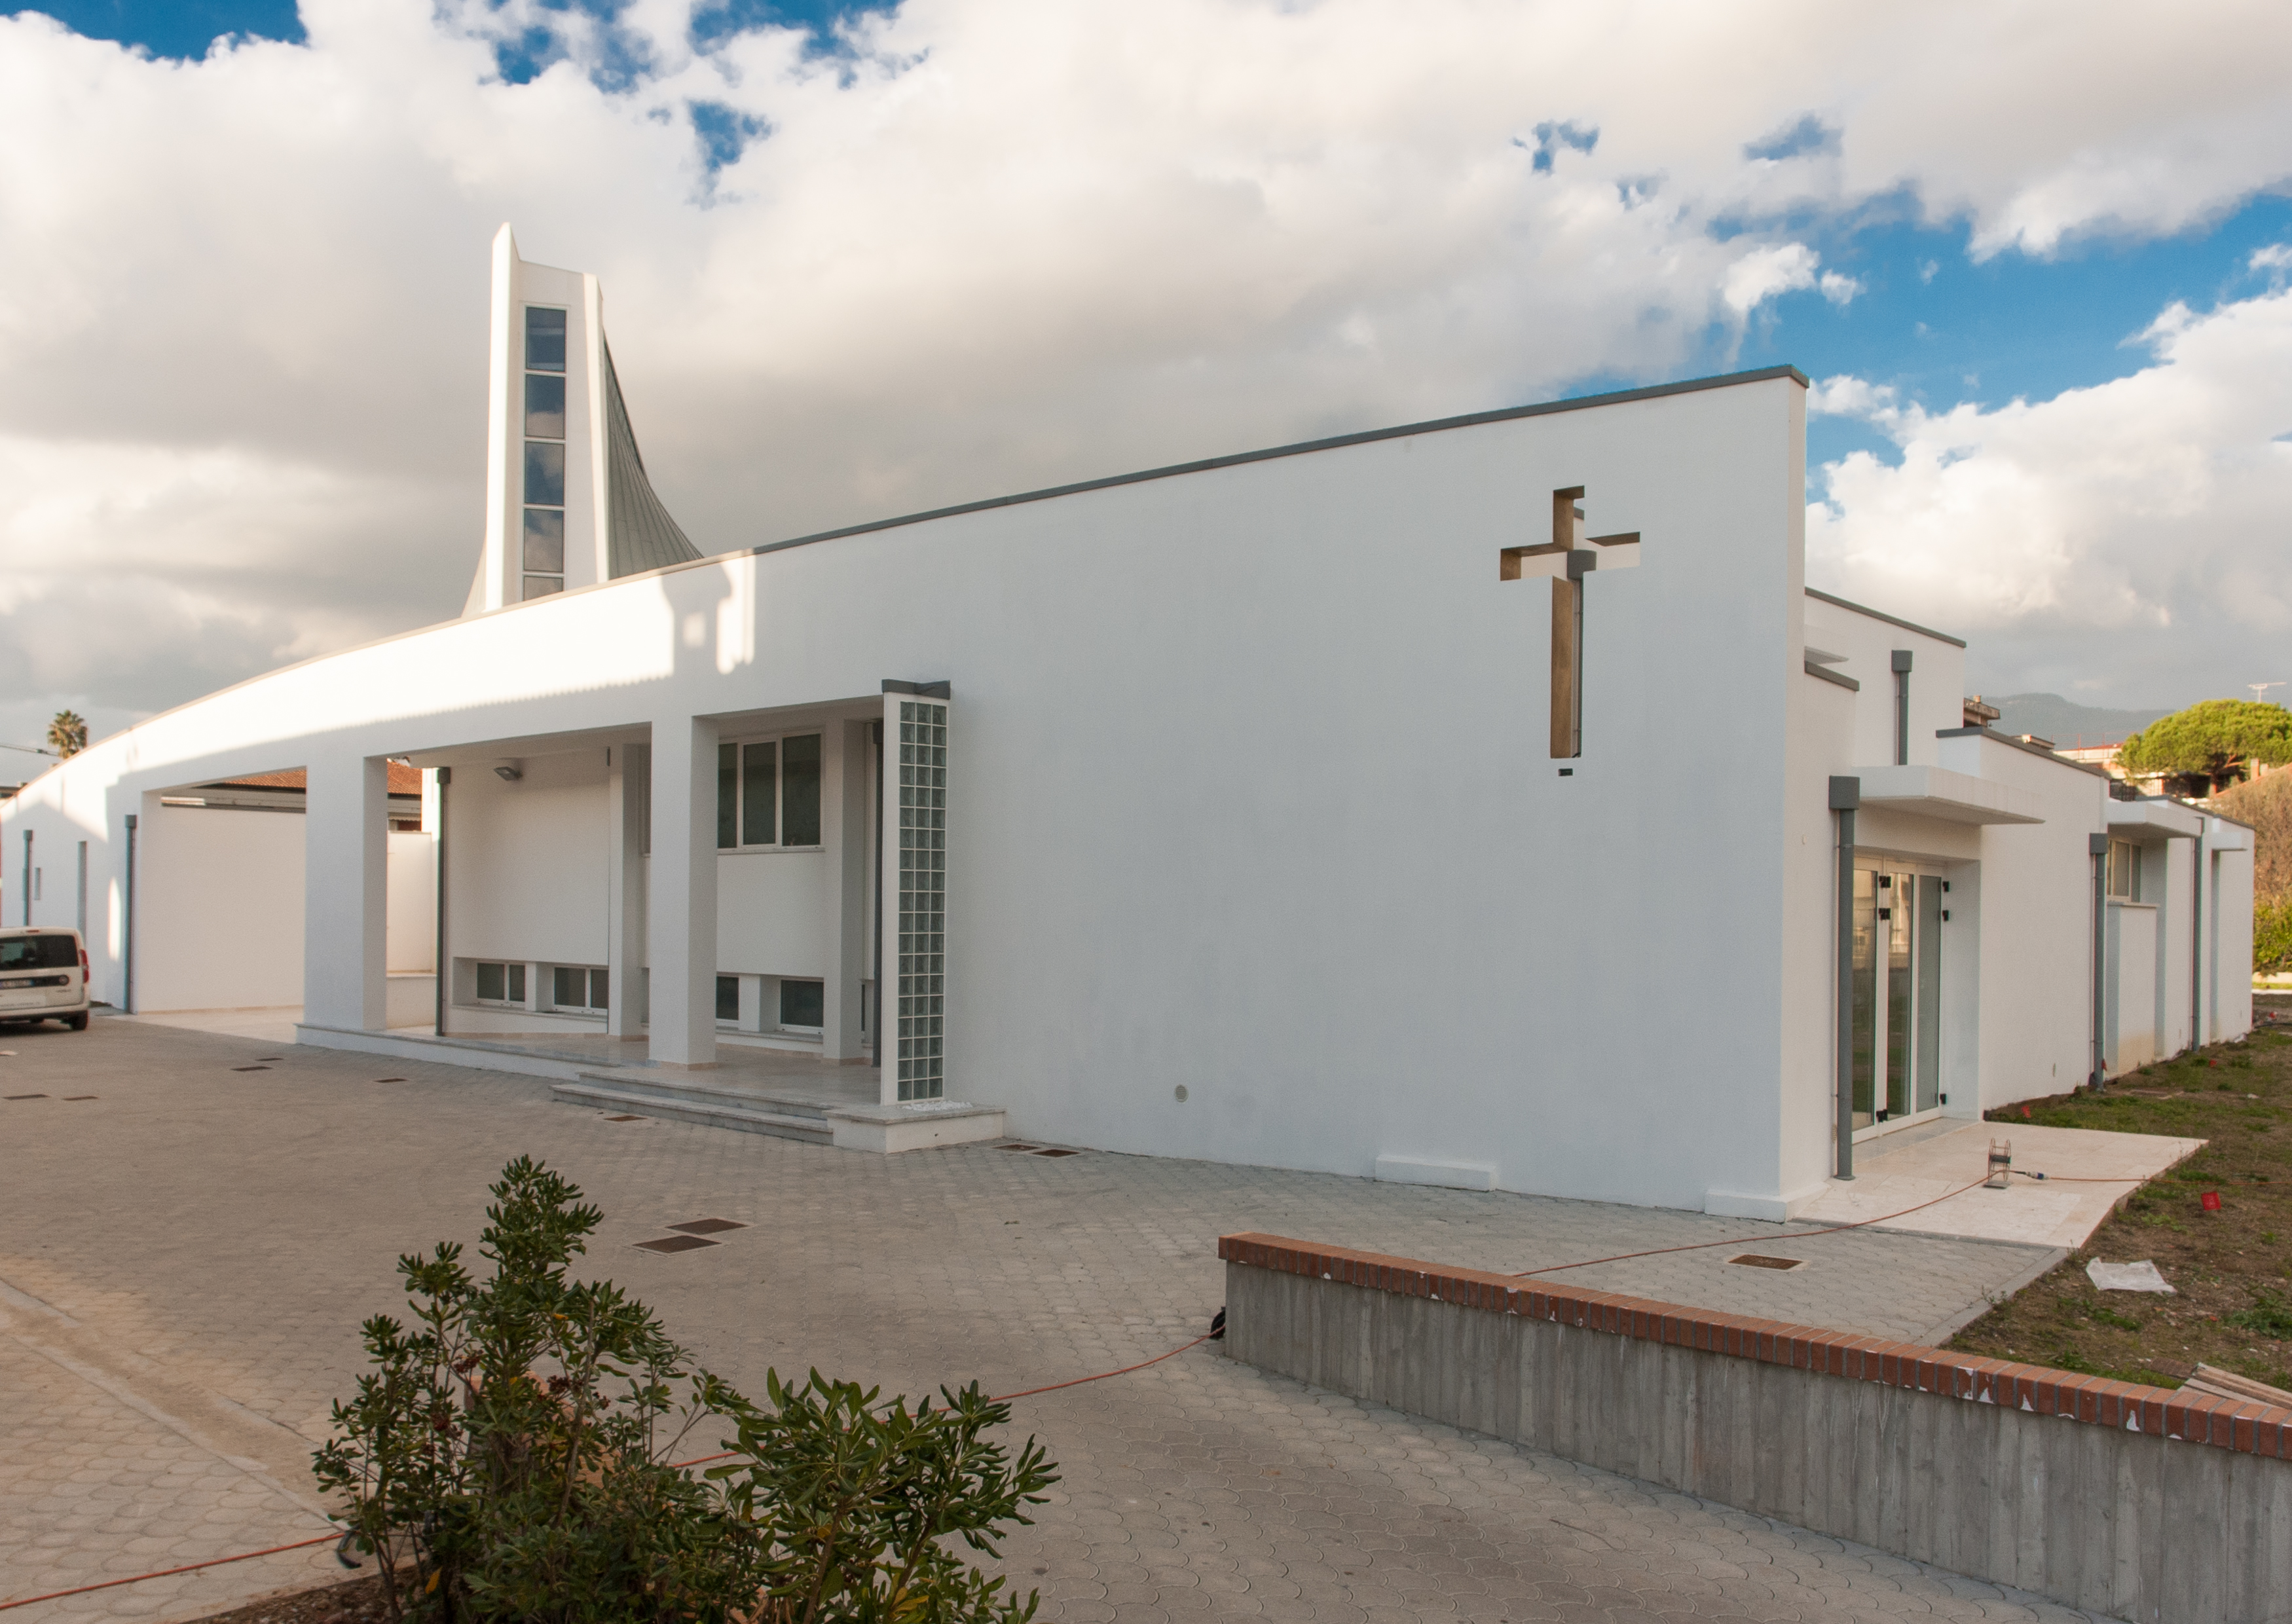 Nuovo Centro Parrocchiale San Giuseppe